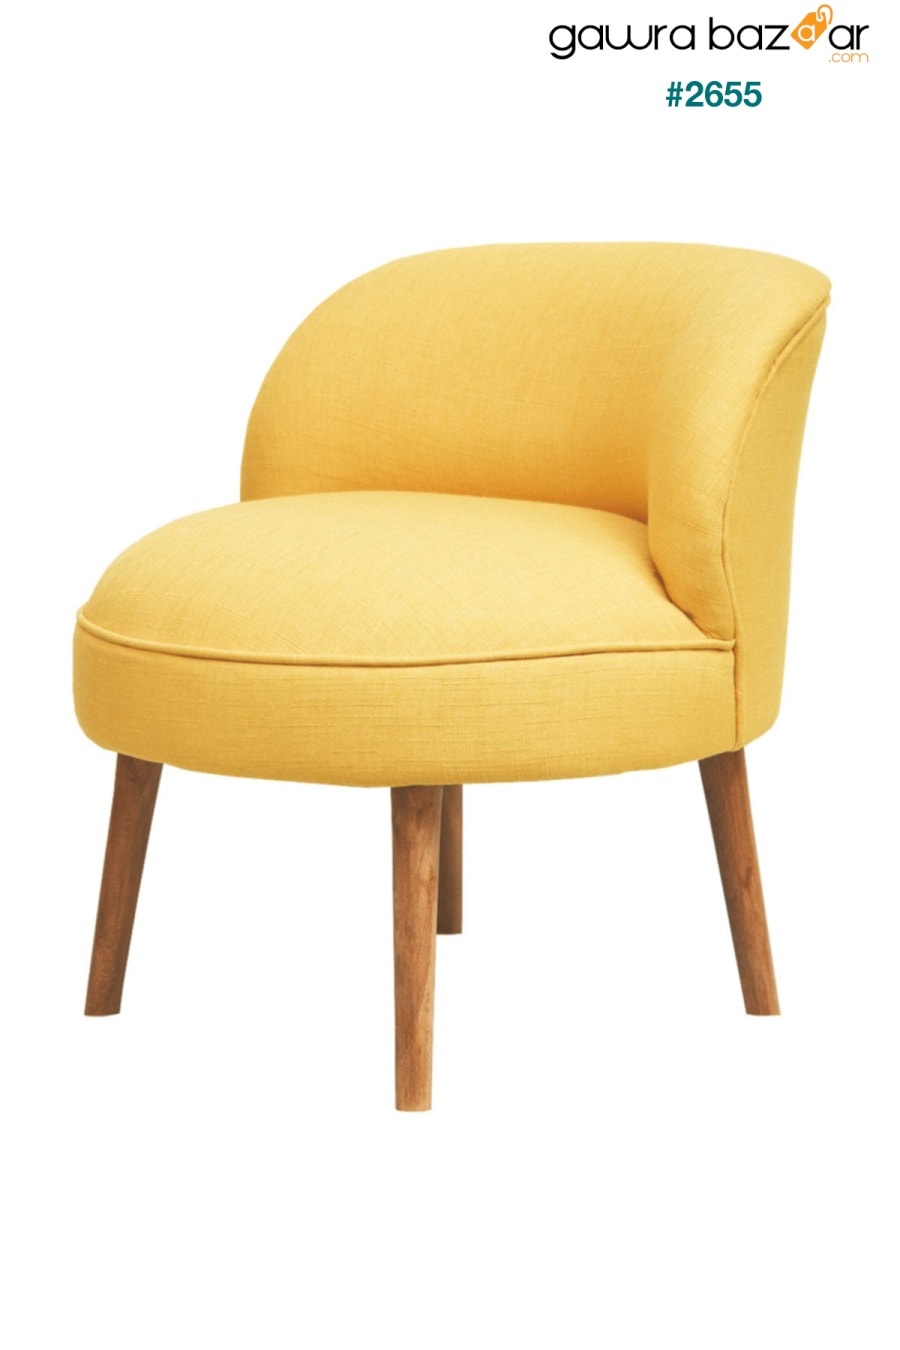 أريكة واحدة لطيفة صفراء Ze10 Design 1